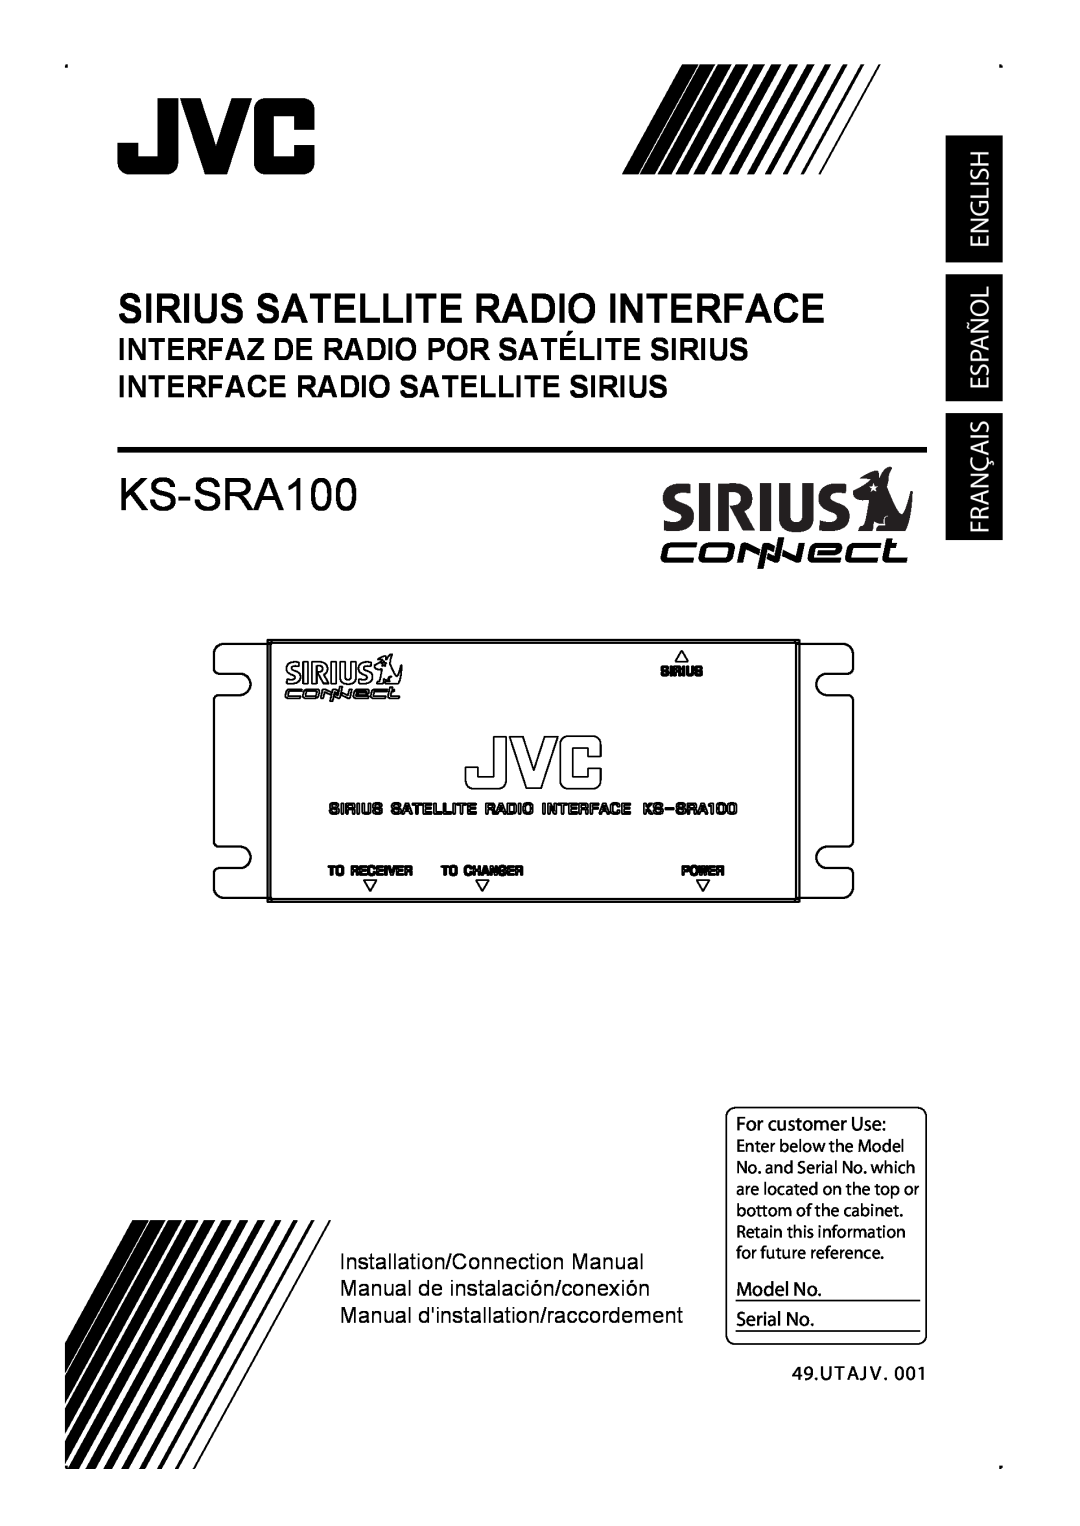 JVC KS-SRA100 manual Sirius Satellite Radio Interface, Français Español English, For customer Use 